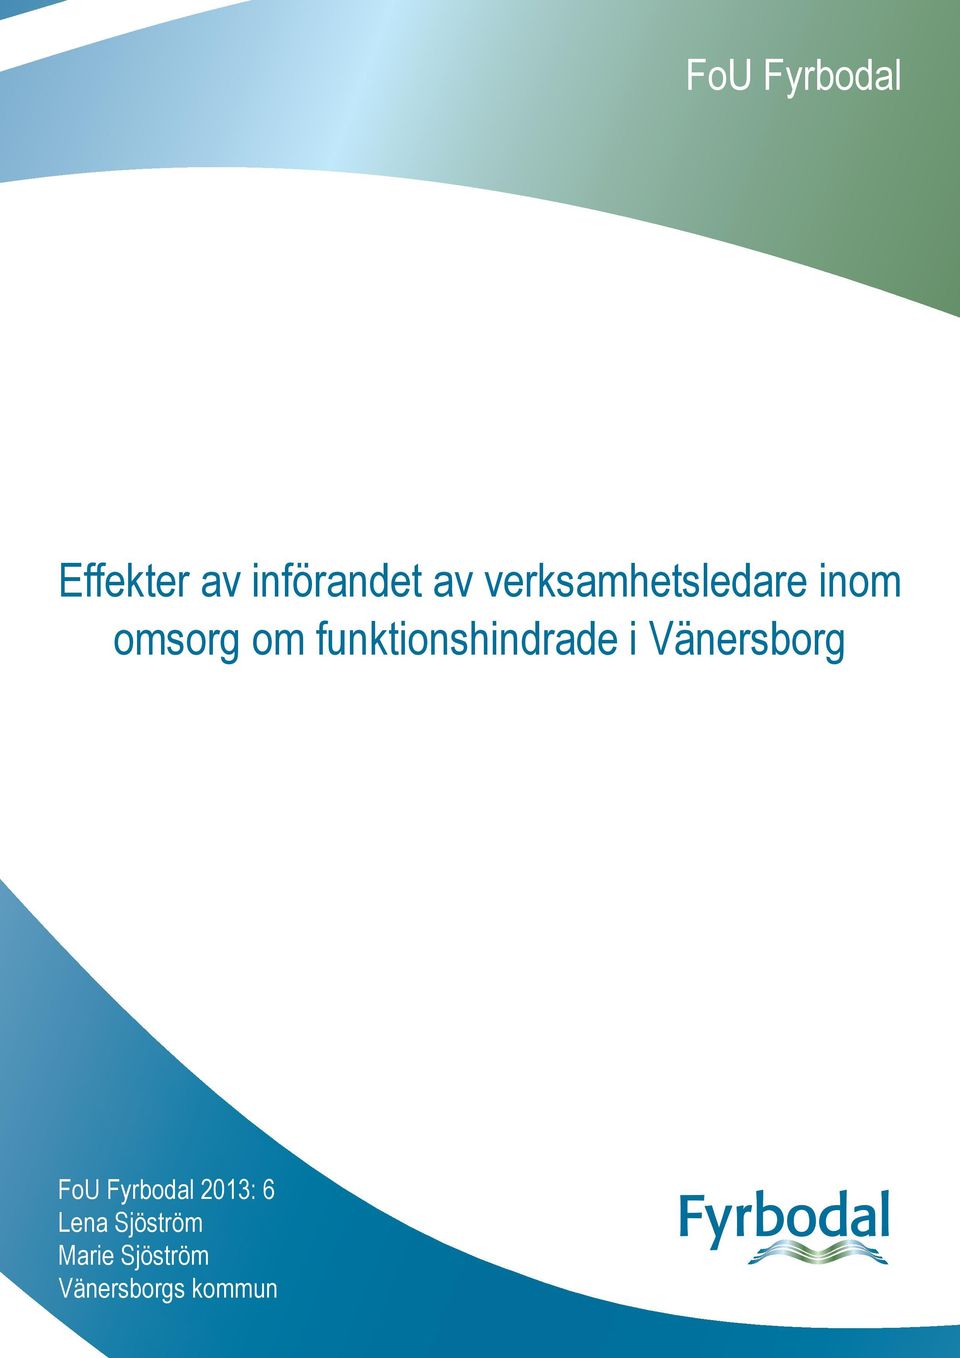 funktionshindrade i Vänersborg FoU